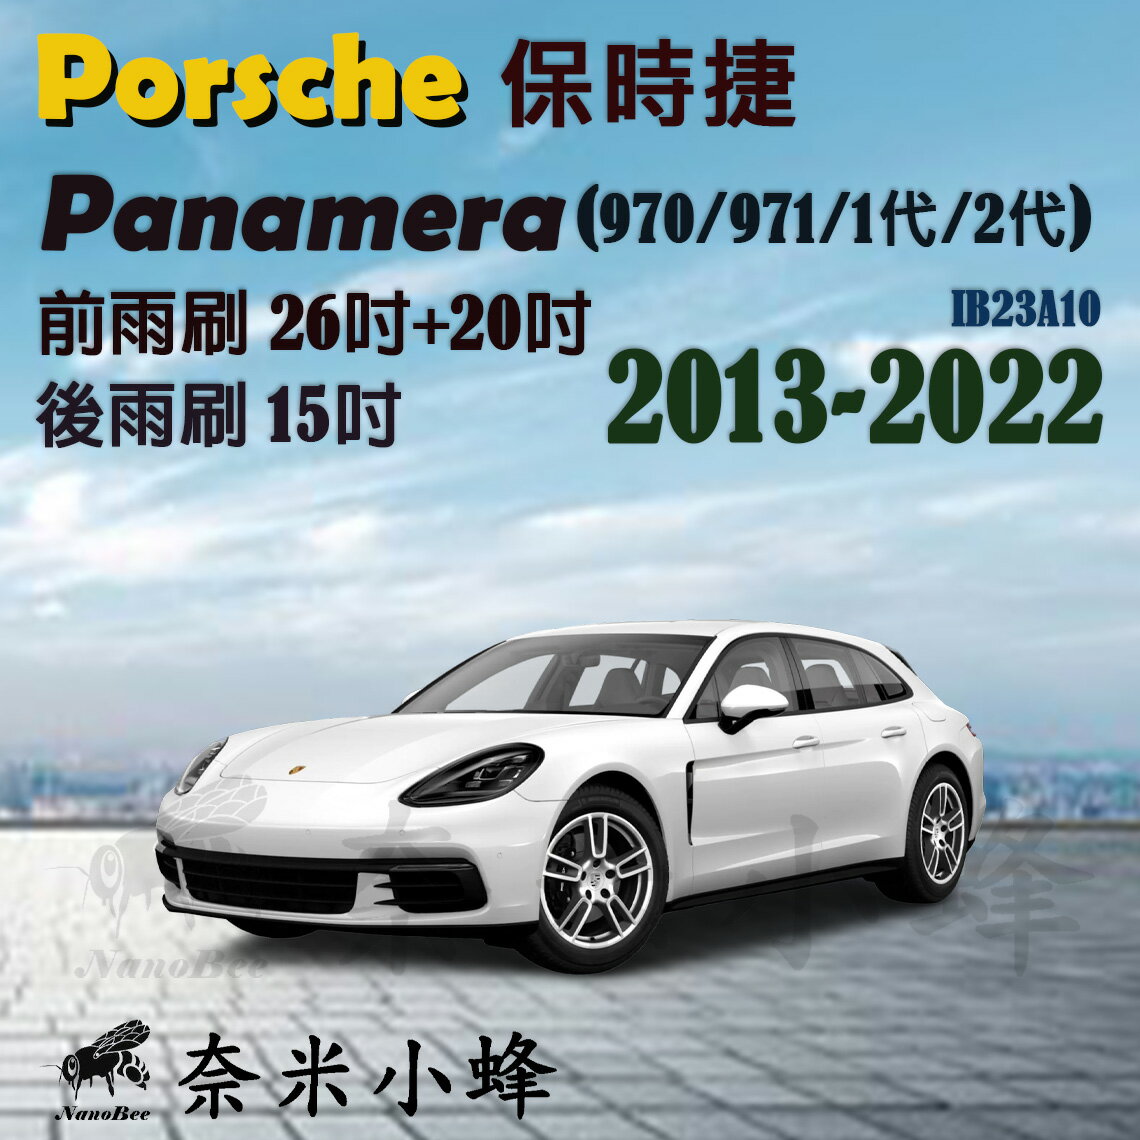 【奈米小蜂】Porsche保時捷 Panamera 2013-NOW(970/971)雨刷 後雨刷 矽膠雨刷 矽膠鍍膜 軟骨雨刷